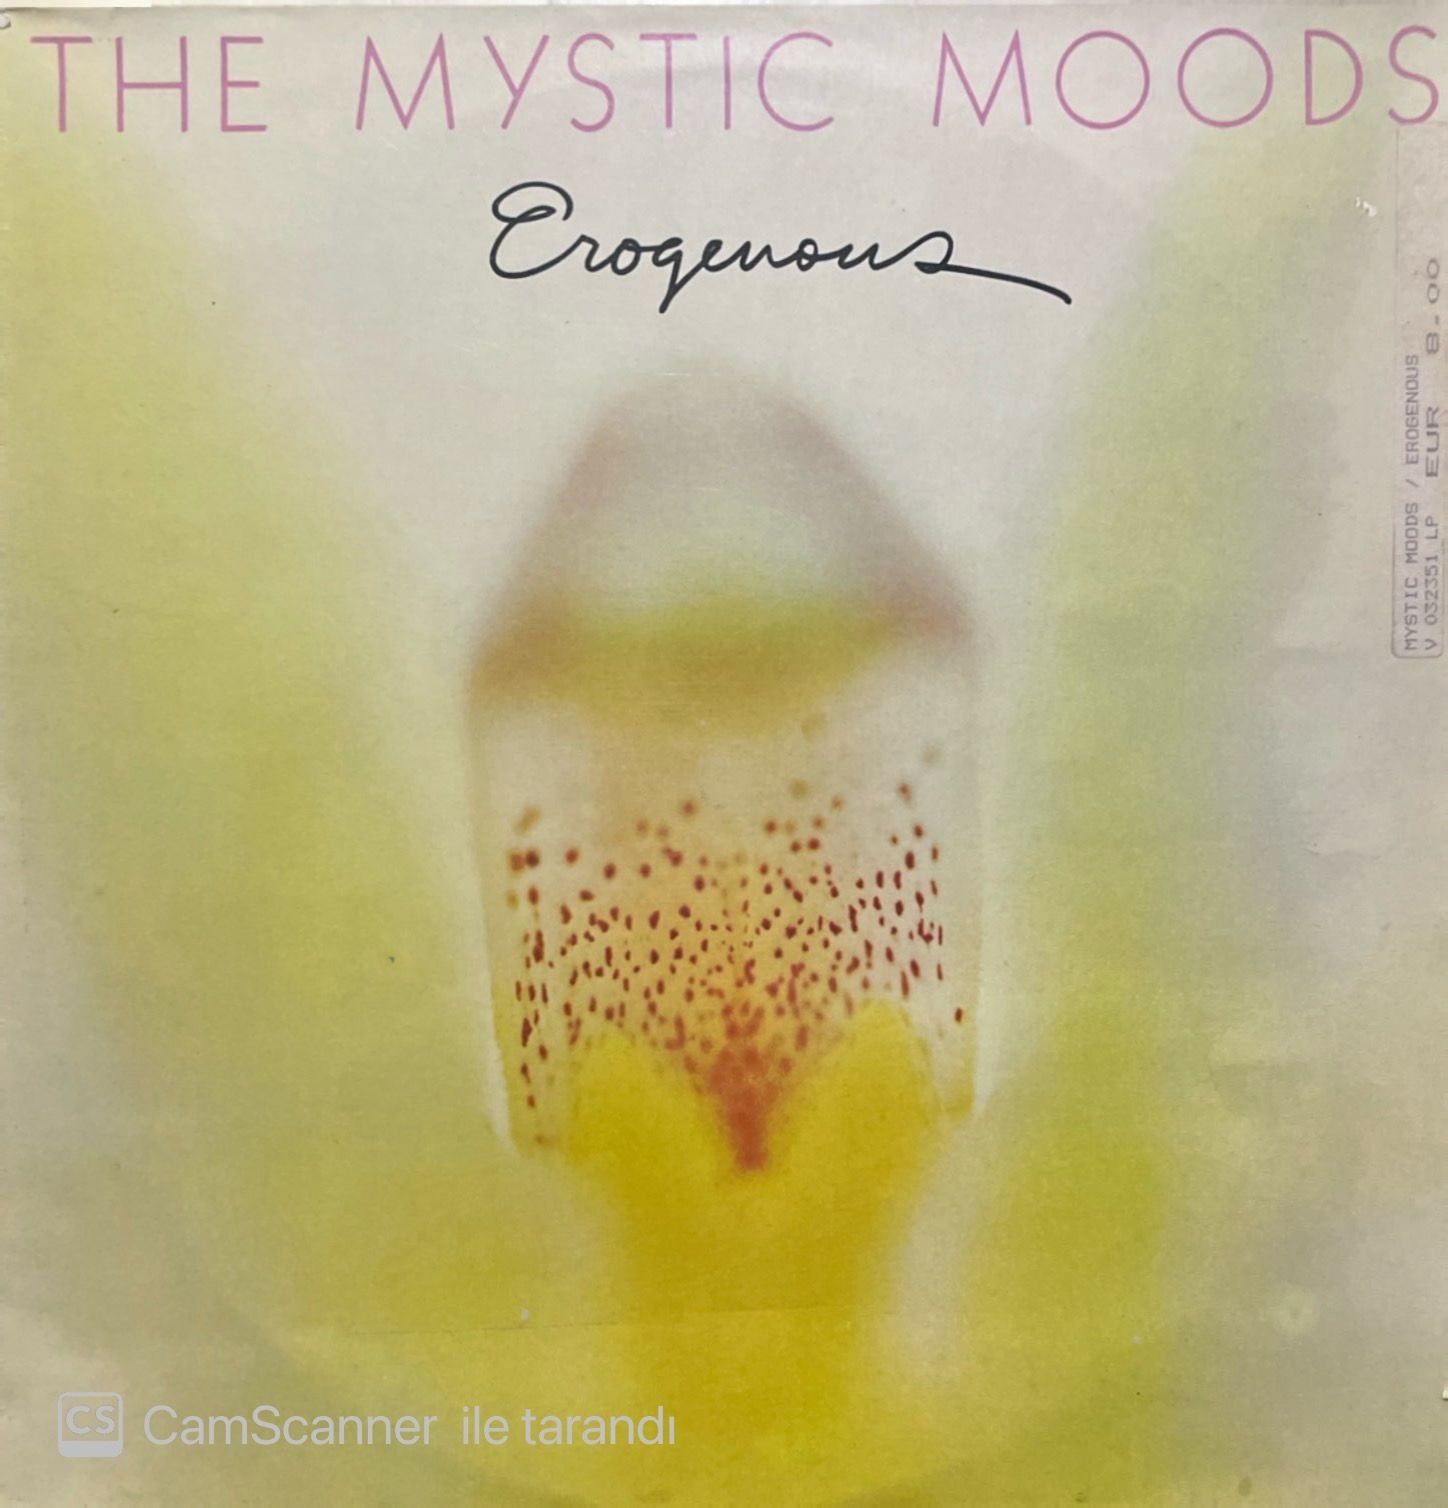 The Mystic Moods Erogenous LP Plak